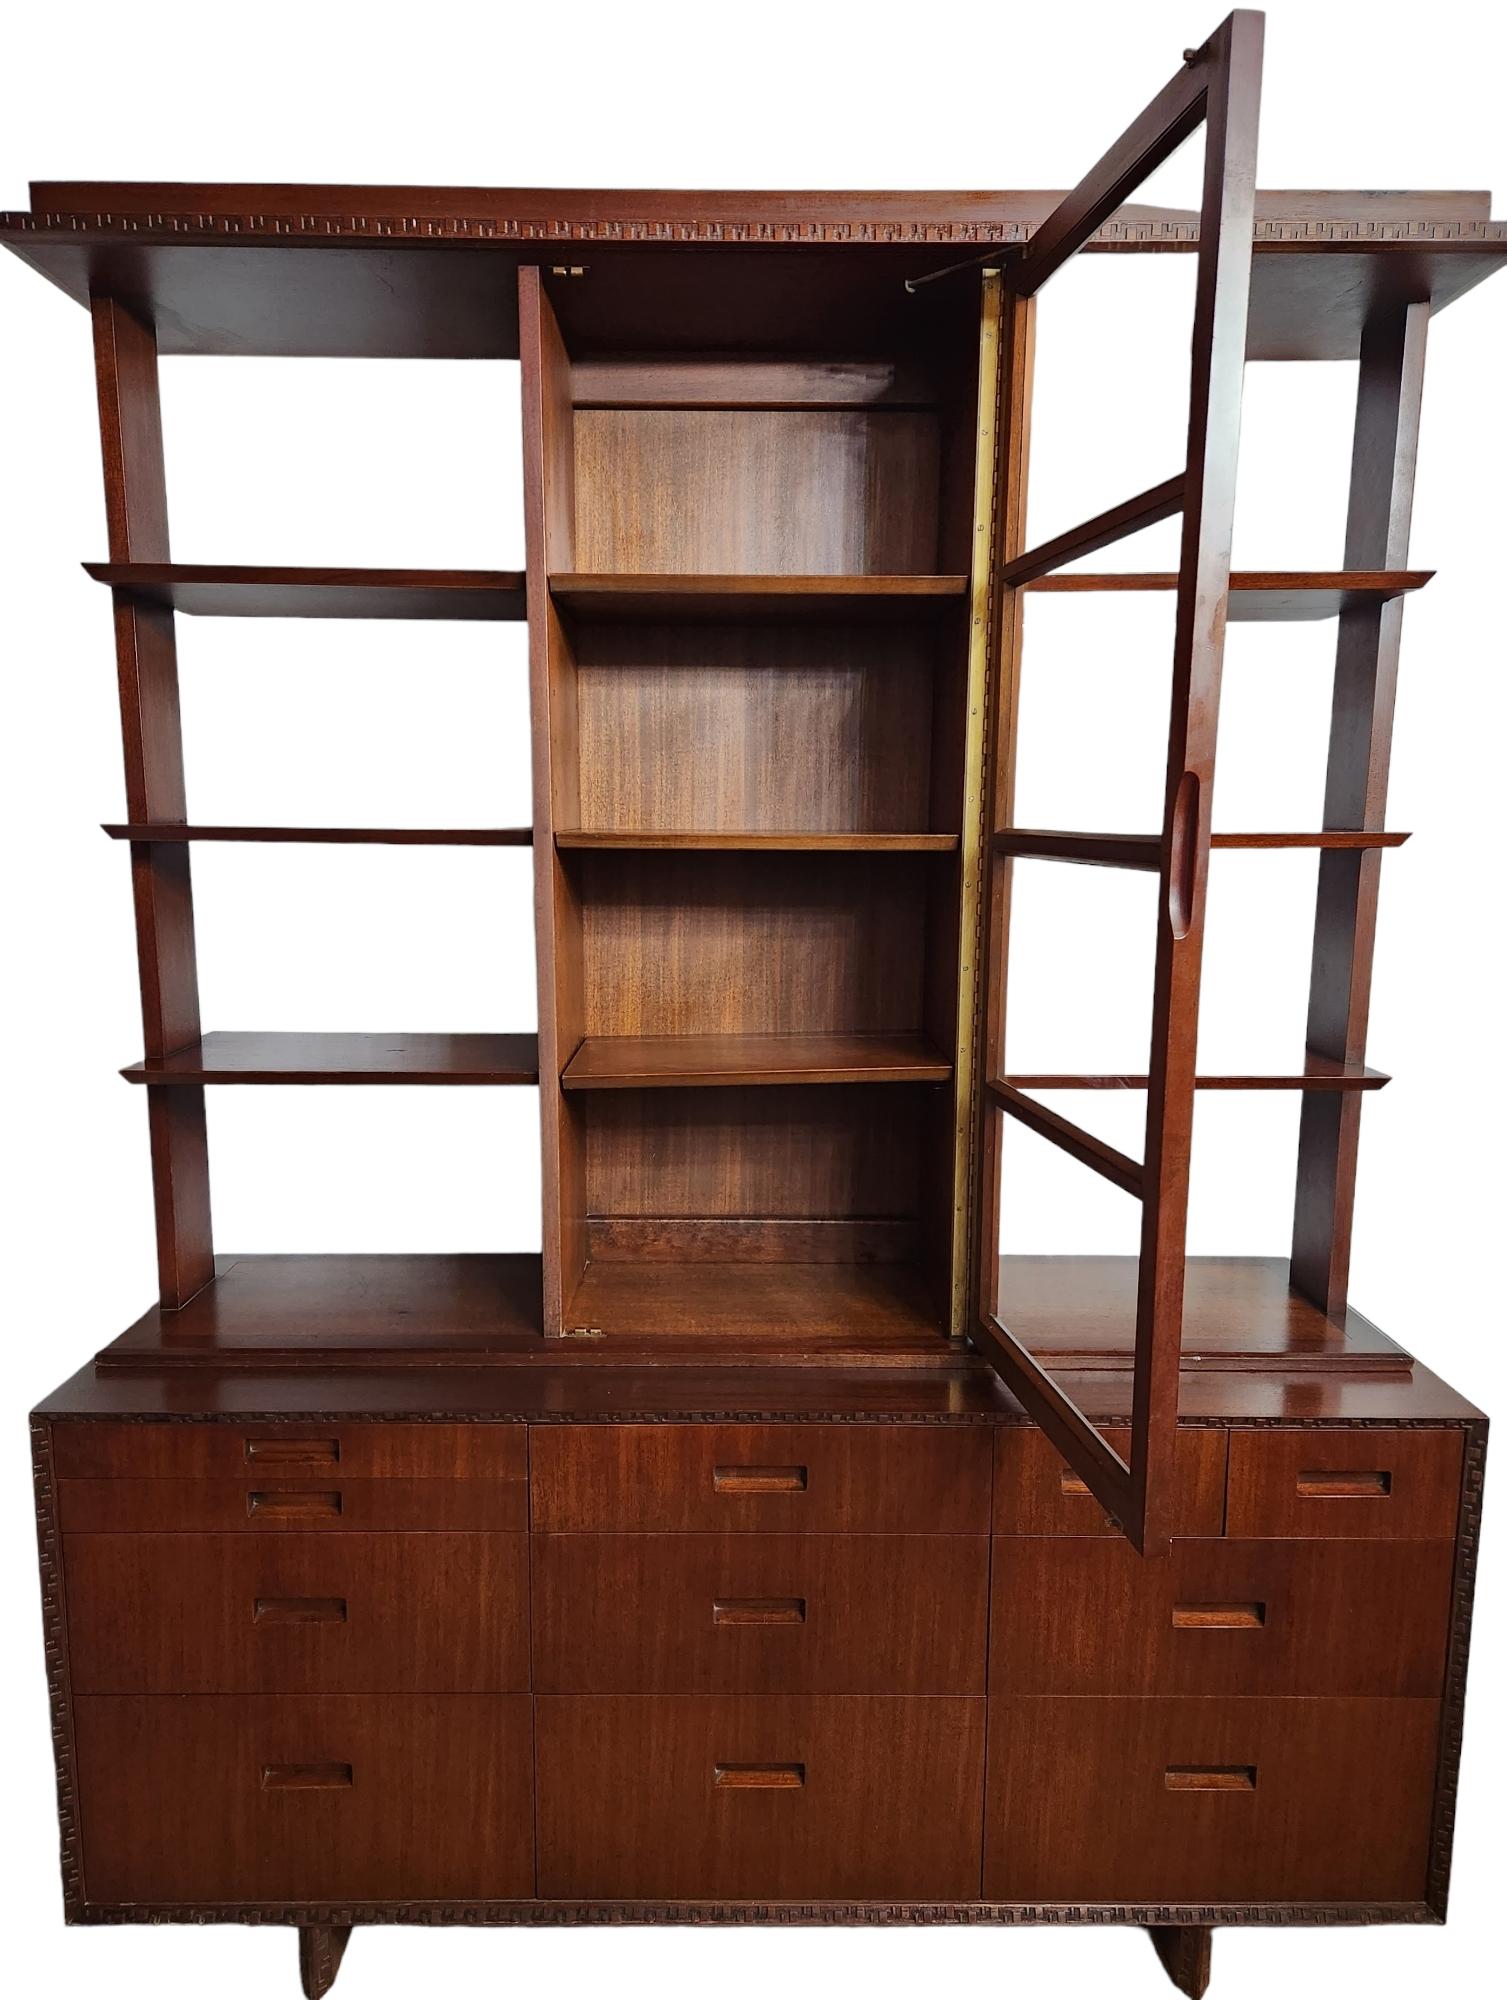 Schönes Mahagoni-Sideboard / Geschirrschrank, entworfen von Frank Lloyd Wright für Heritage Henredon im Jahr 1955 als Teil seiner Taliesin-Linie.
Die Schublade in der rechten oberen Ecke ist auf der Innenseite mit der Marke Heritage-Henredon und der